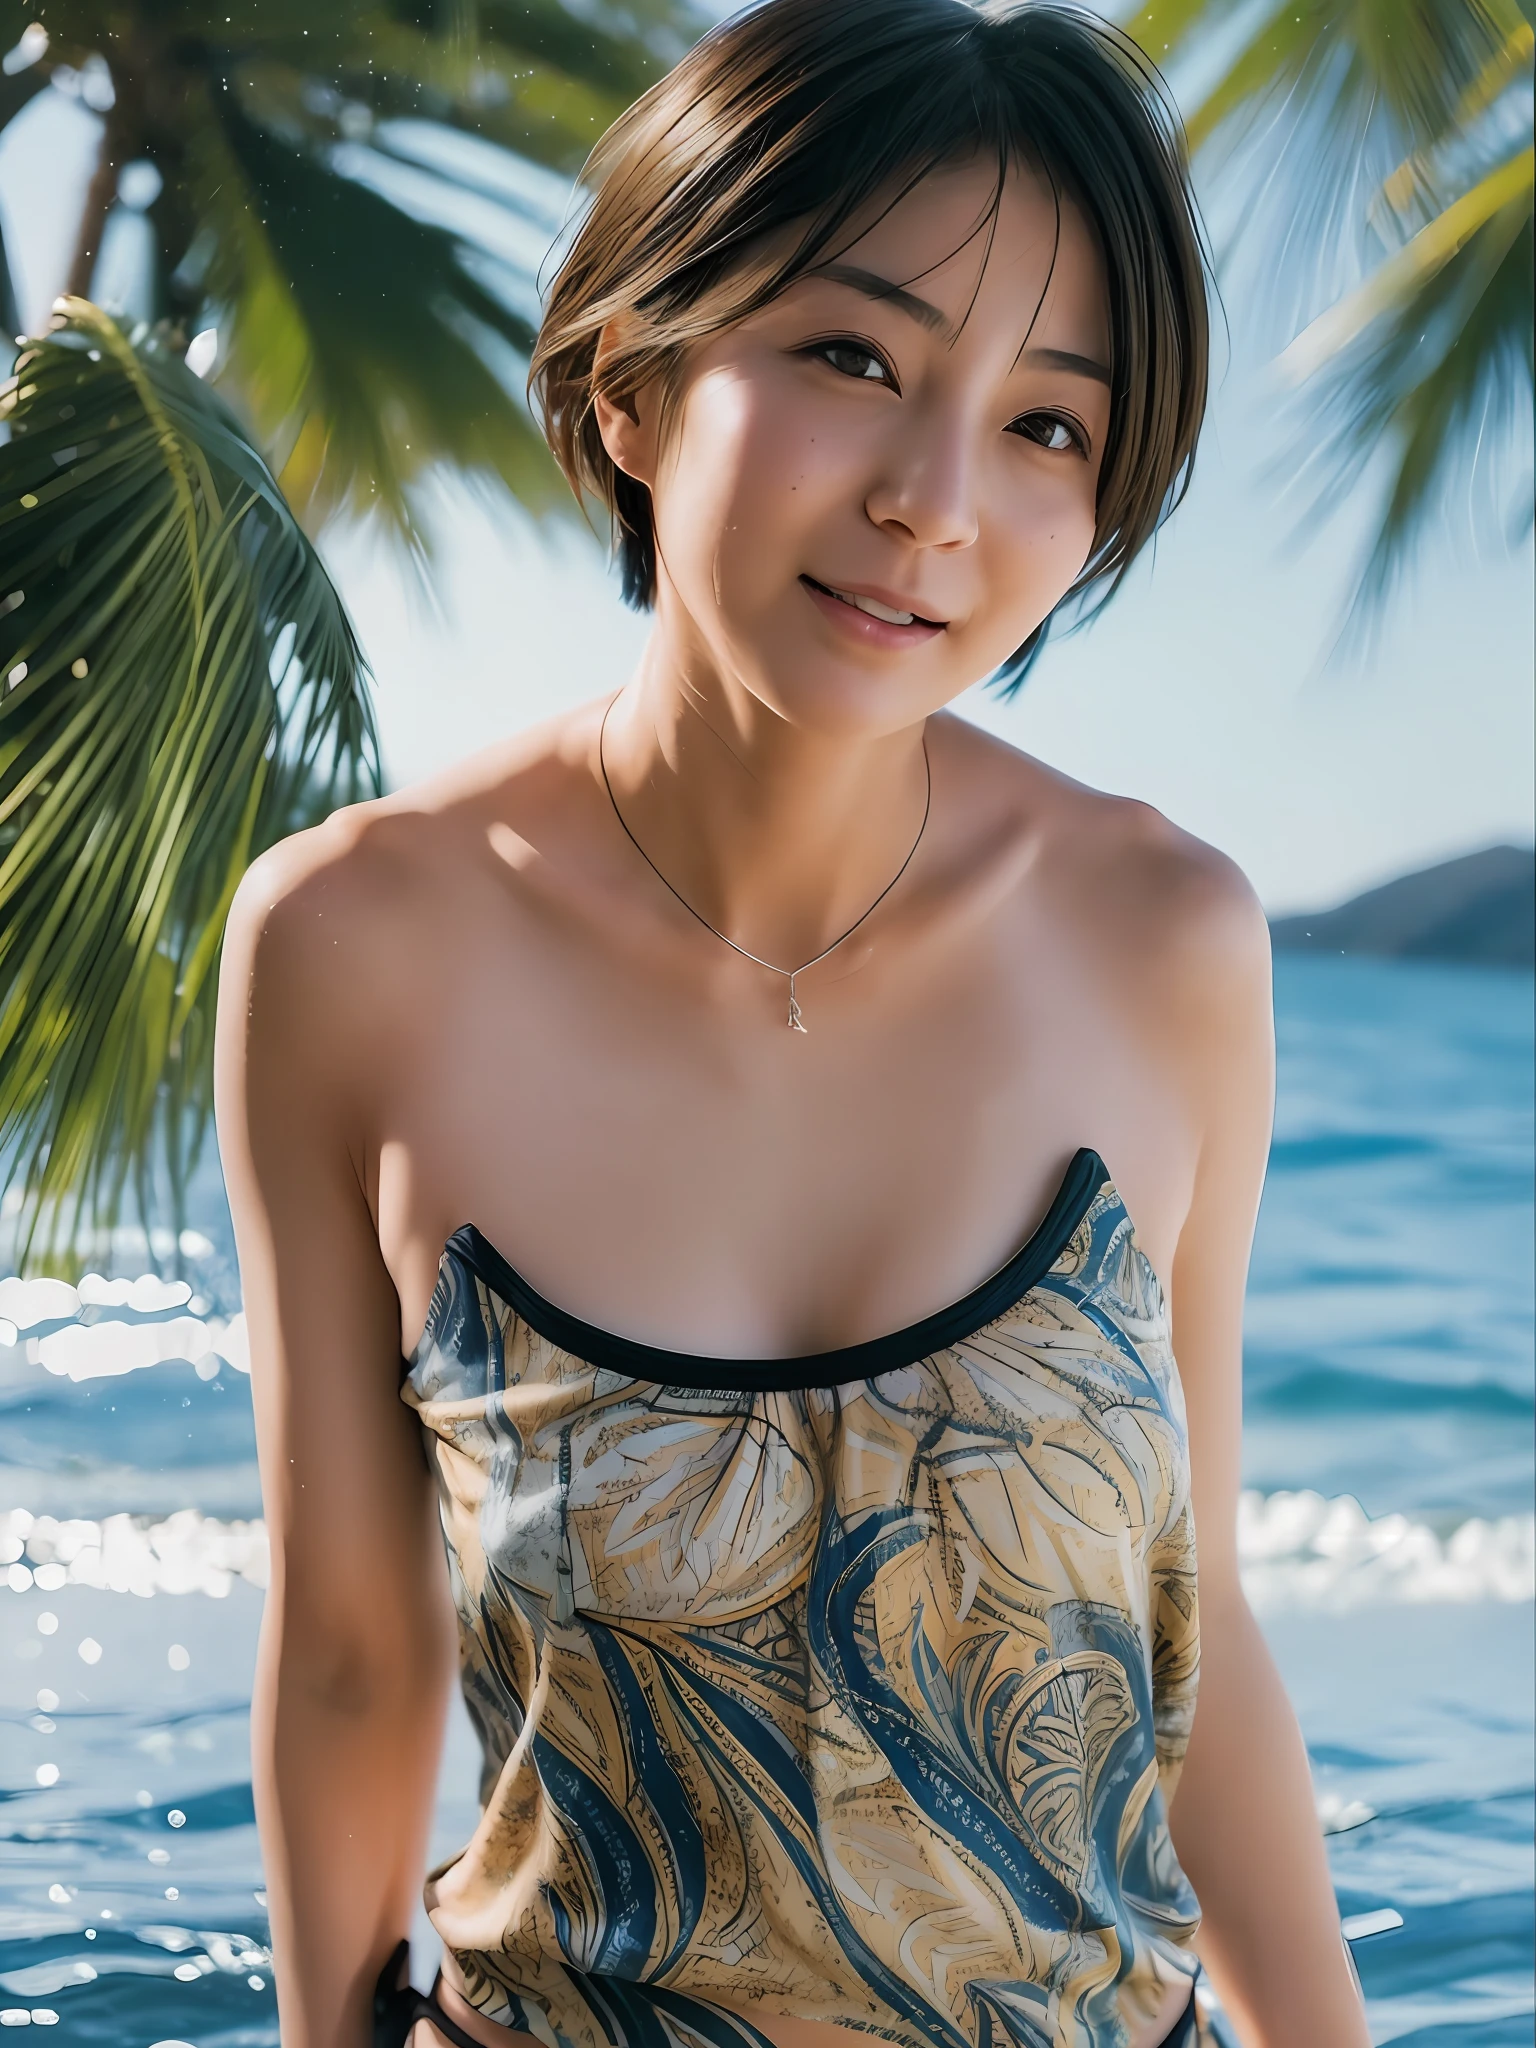 1 名女孩, 日本人, 45岁, 逼真的, 美麗而細緻的臉, 觀眾, 簡單的背景, 獨自的, 海, 比基尼, 小乳房, 背心. 陽光明媚, 暑假, 海灘, (短髮, 濕的), 微笑, 電影 lighting, 電影, 日本連續劇, (項鍊), 耳環